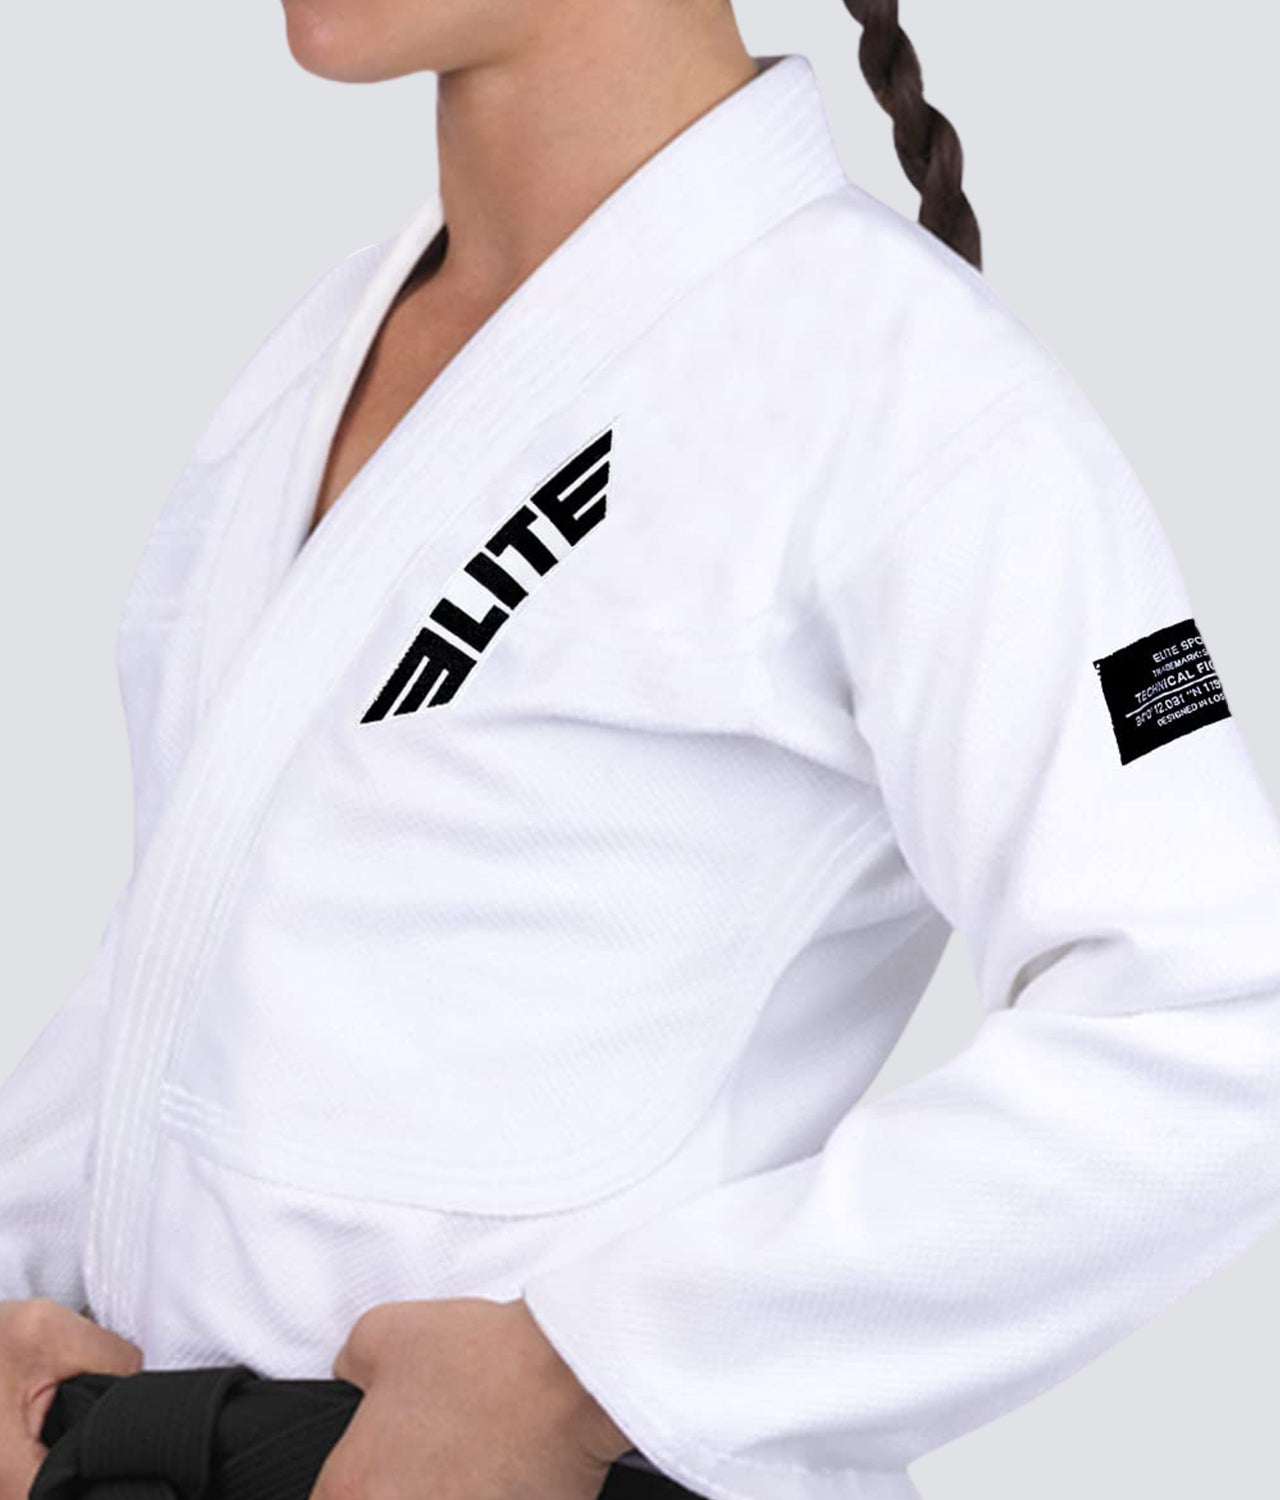 Elite Sports Women's Core White Brazilian Jiu Jitsu BJJ Gi Closeup View